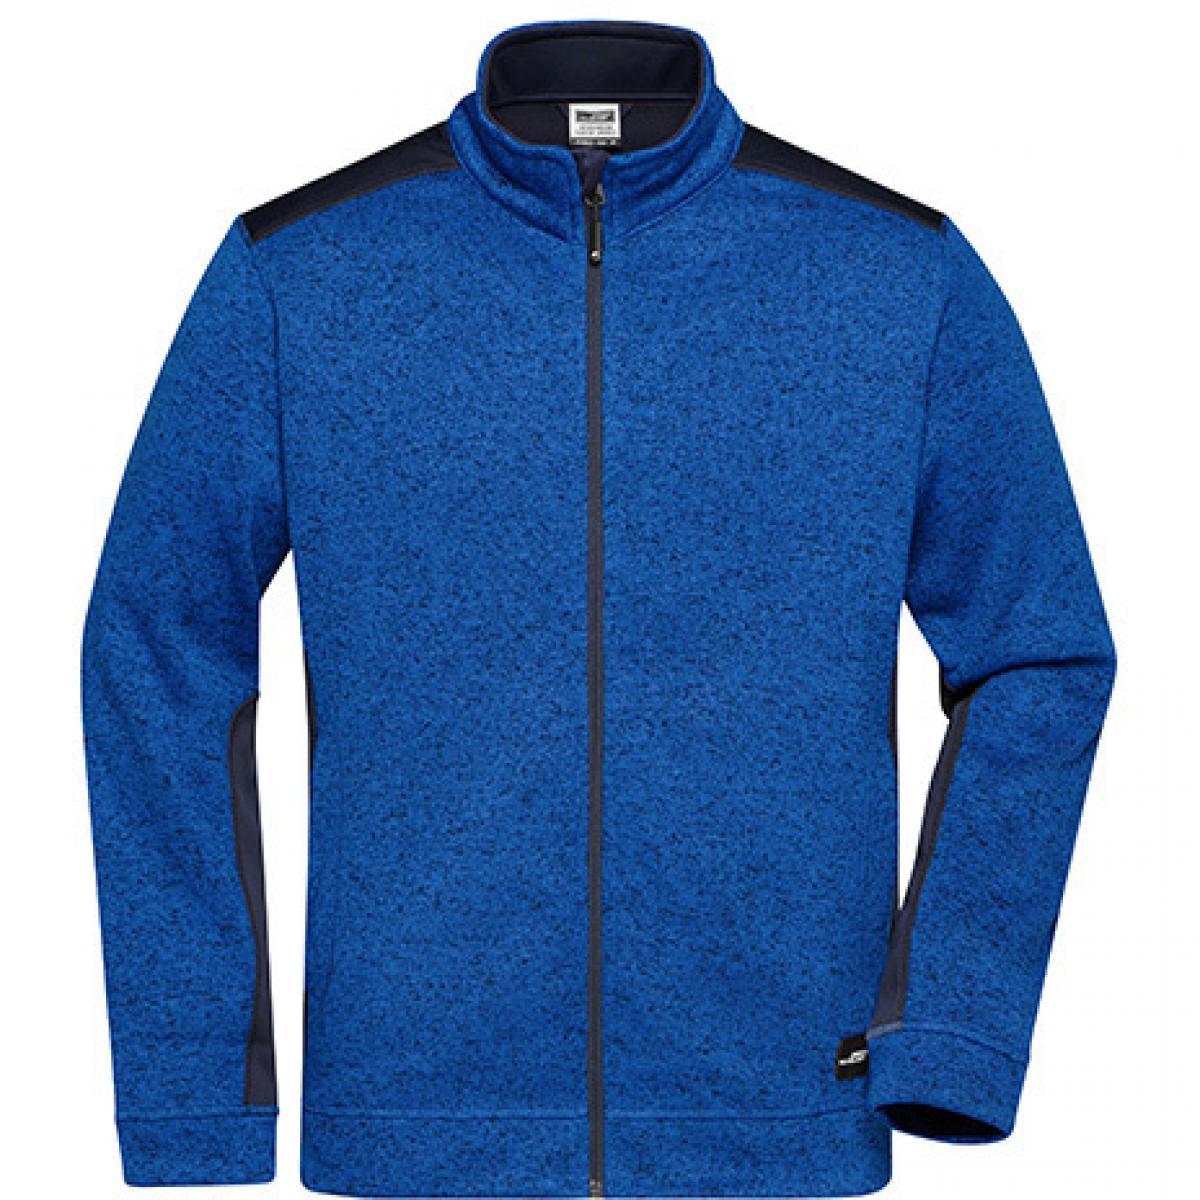 Hersteller: James+Nicholson Herstellernummer: JN862 Artikelbezeichnung: Herren Jacke, Men‘s Knitted Workwear Fleece Jacket -STRONG- Farbe: Royal Melange/Navy